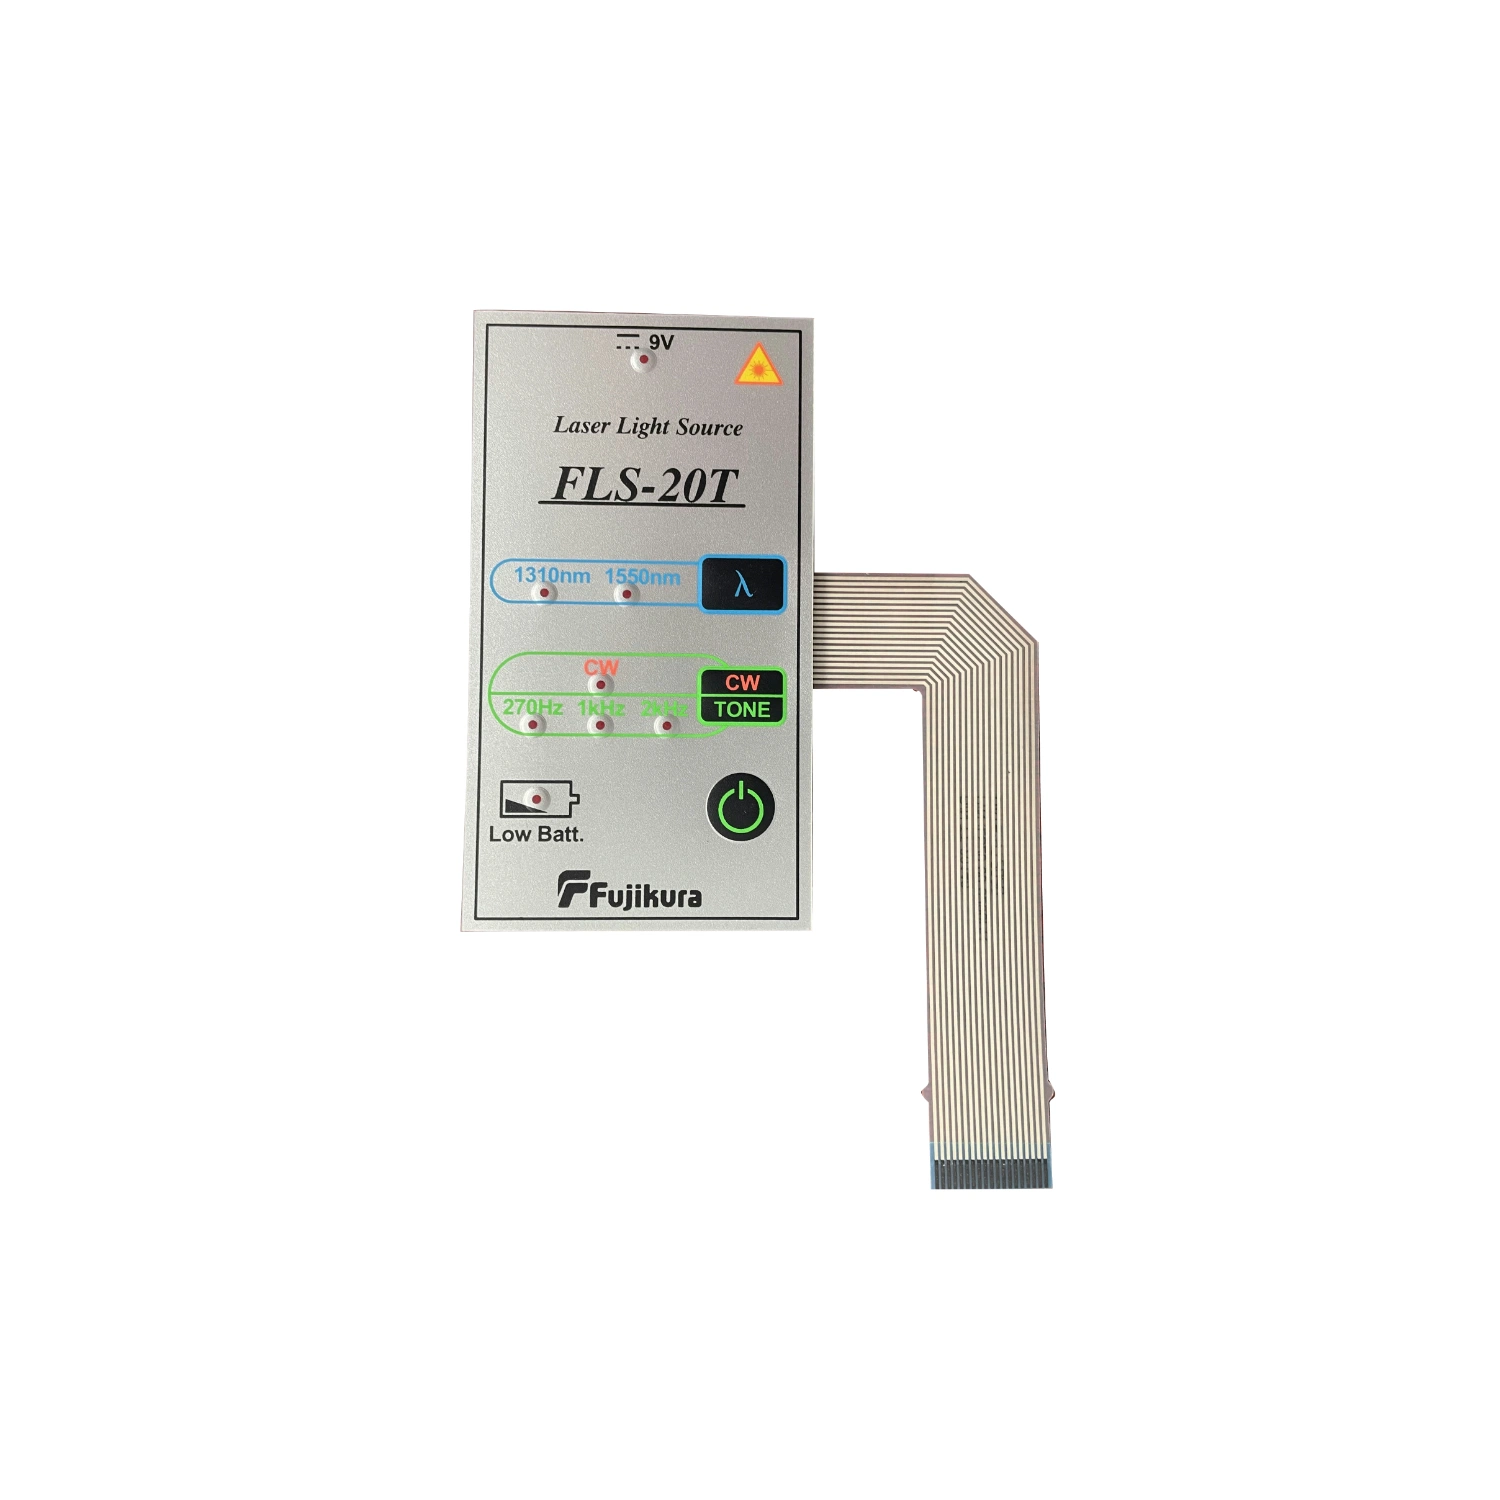 مفتاح TACT بلاستيكي يمكن الضغط عليه وبواسطة زر مقاومة للماء مخصص مزود بمؤشر LED لوحة مفاتيح بلوحة غشائية مزودة بملصق لصق ذاتي 3M